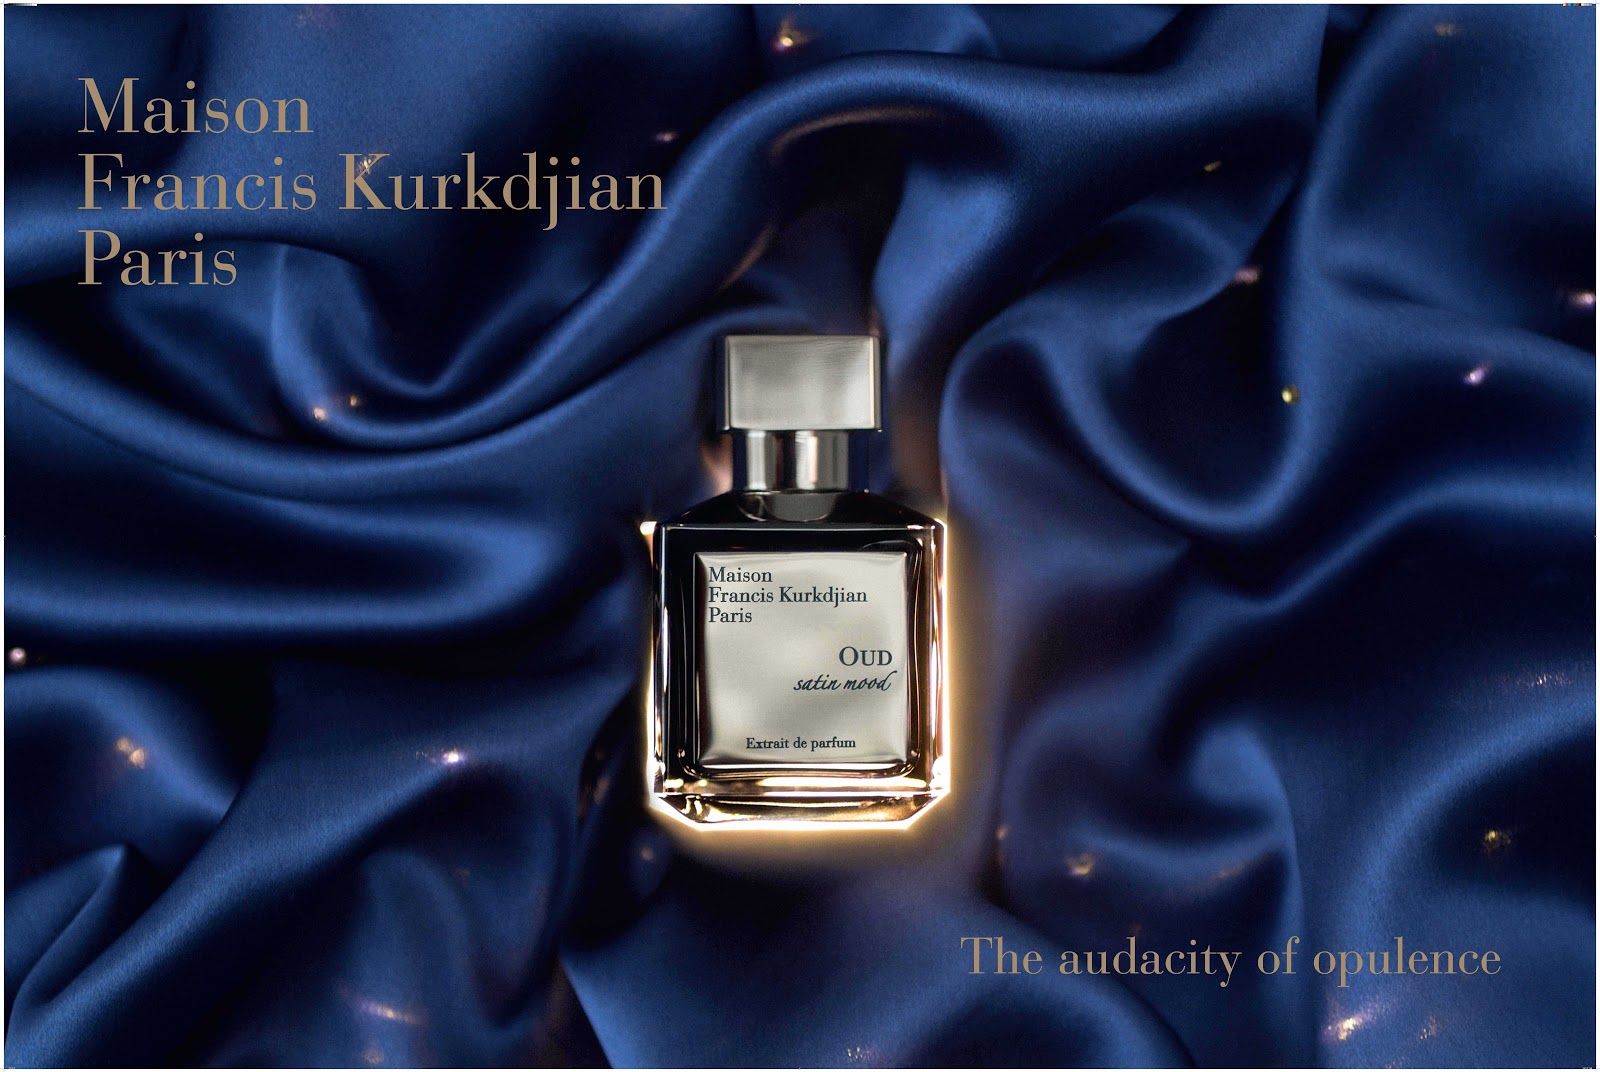 Maison Francis Kurkdjian Launches Oud Satin Mood Extrait De Parfum At Paris Gallery Dubai Fashion Blog